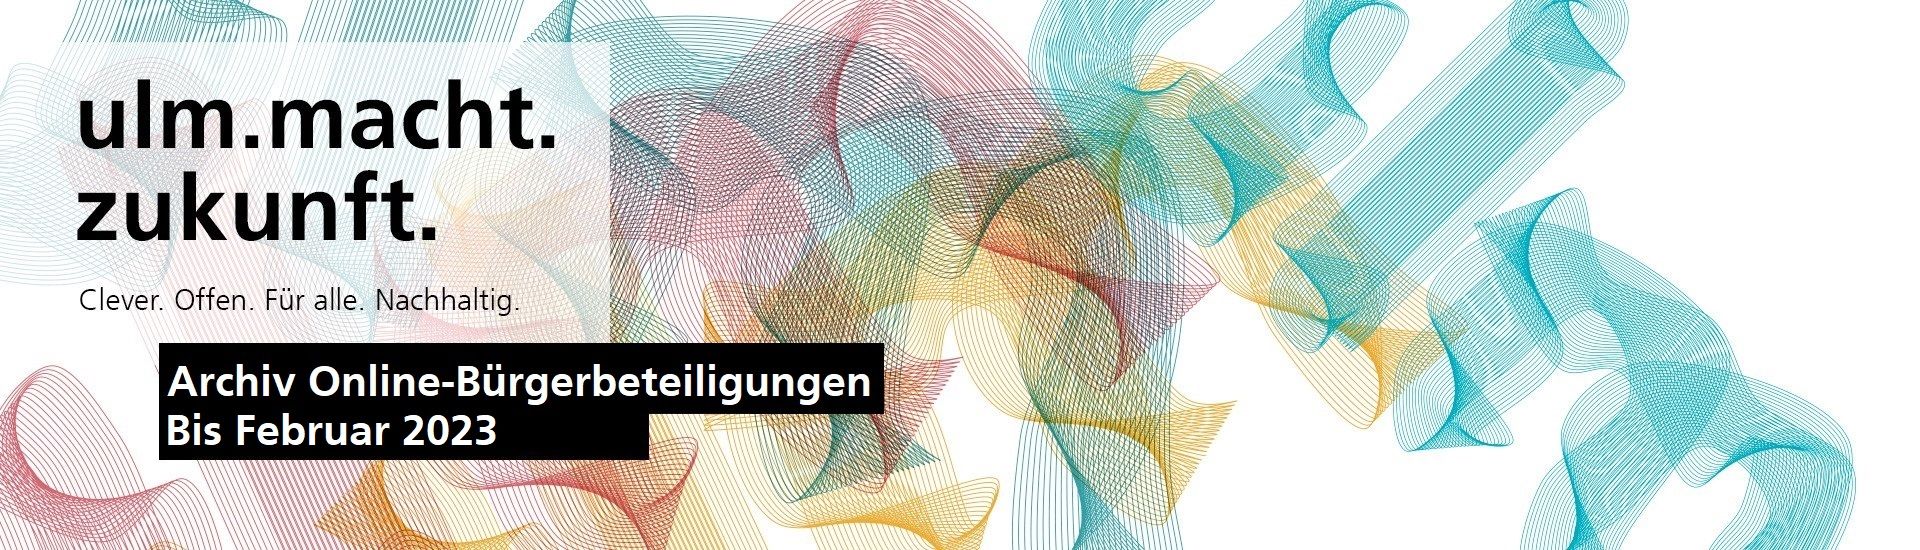 Archiv Online-Bürgerbeteiligungen auf zukunftsstadt-ulm.de